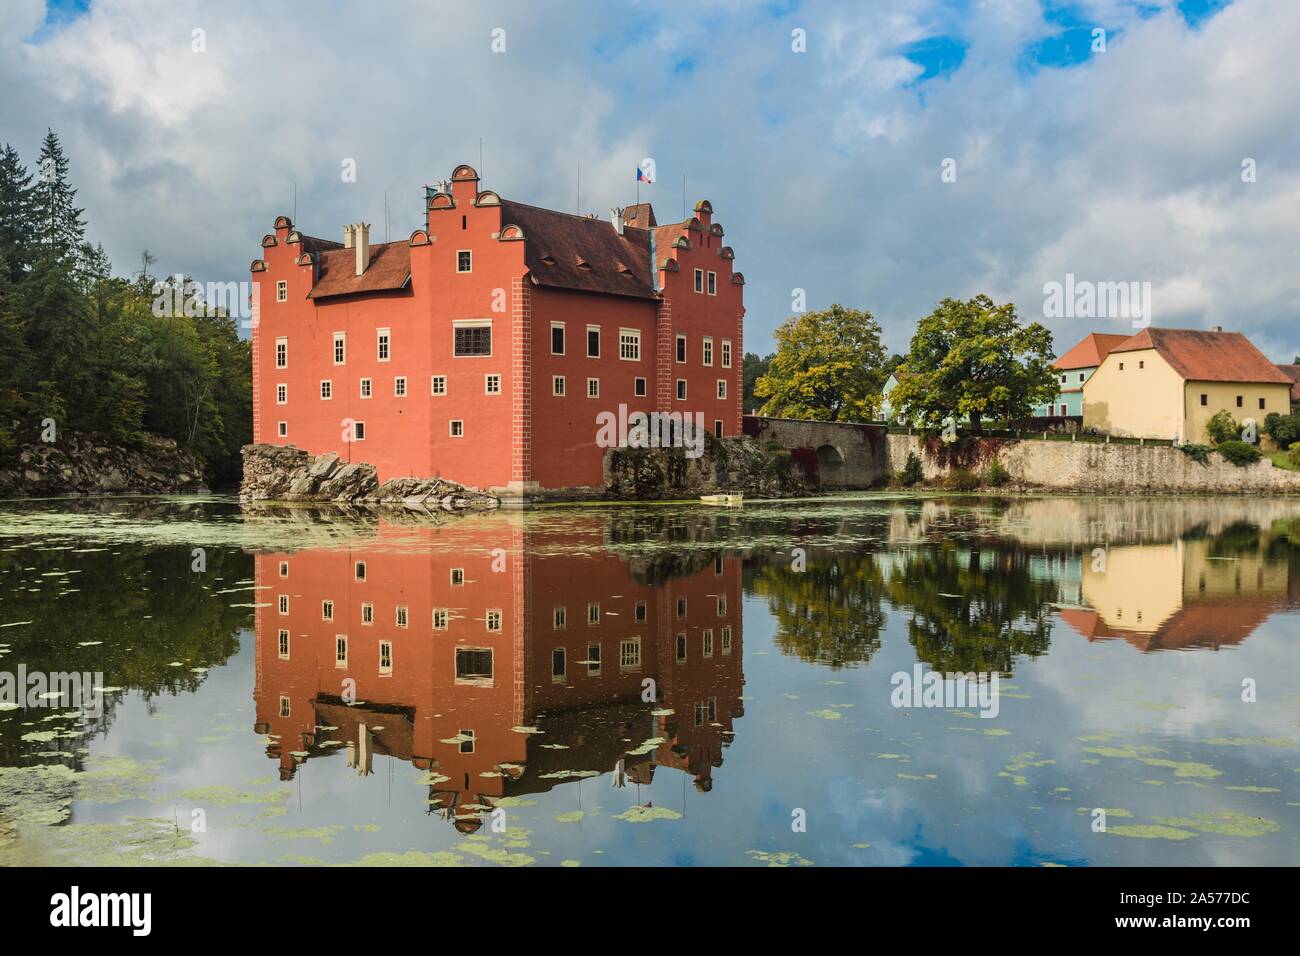 Cervena Lhota, Repubblica Ceca - 28 Settembre 2019: vista del famoso castello rosso in piedi su una roccia al centro di un lago. Giornata di sole e cielo blu. Foto Stock